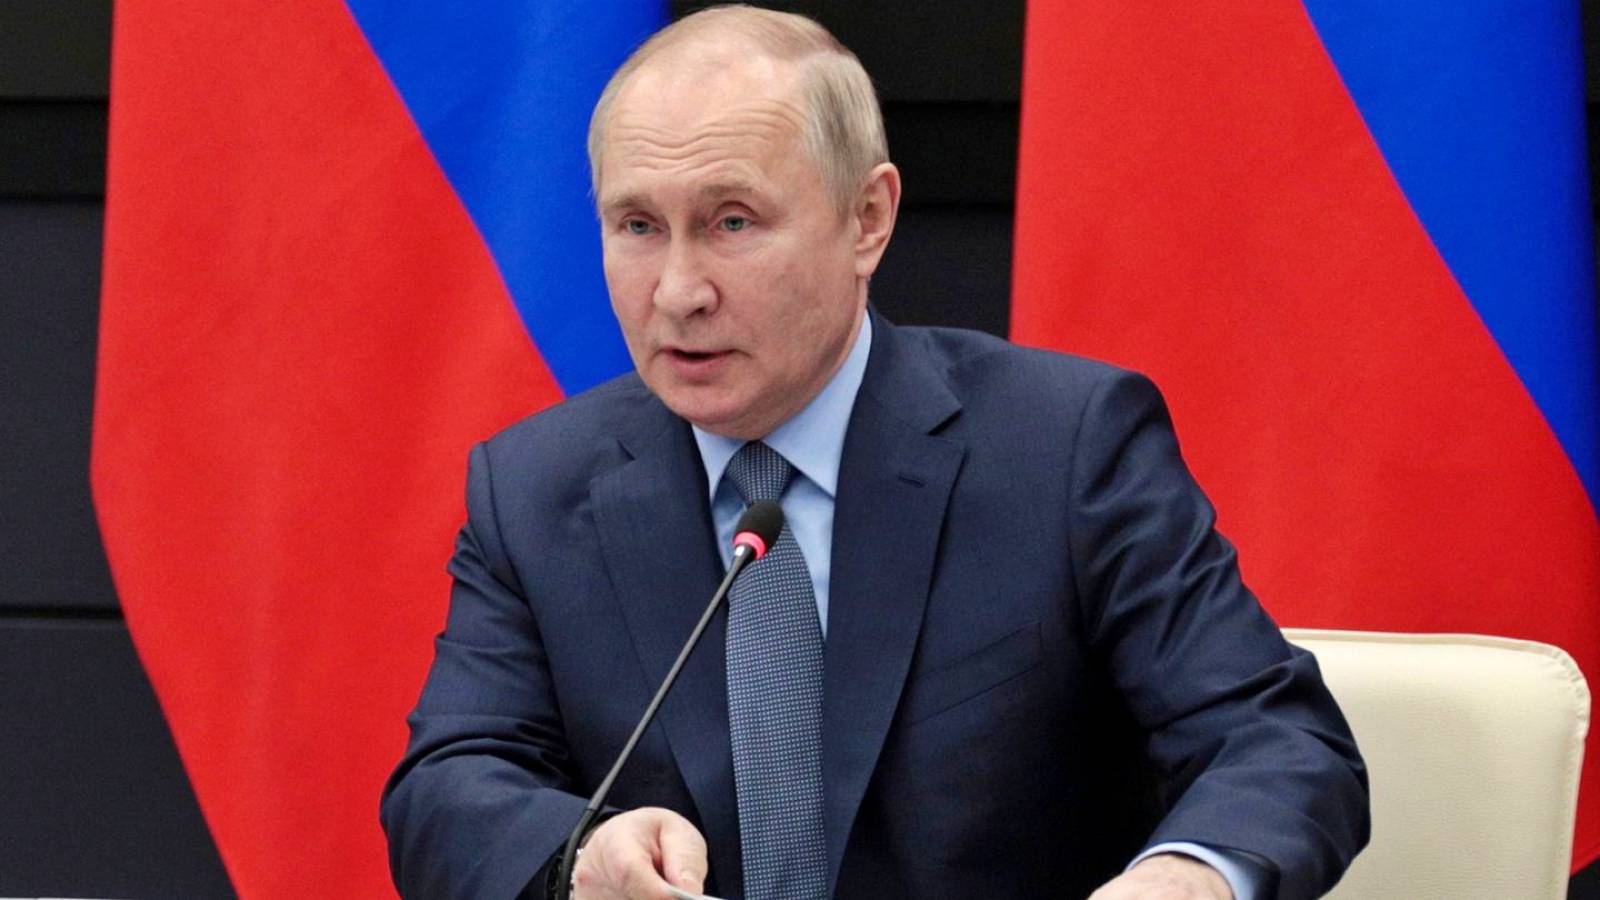 Vladimir Poetin valt het Westen aan en beschuldigt Rusland ervan het te dwingen Oekraïne binnen te vallen